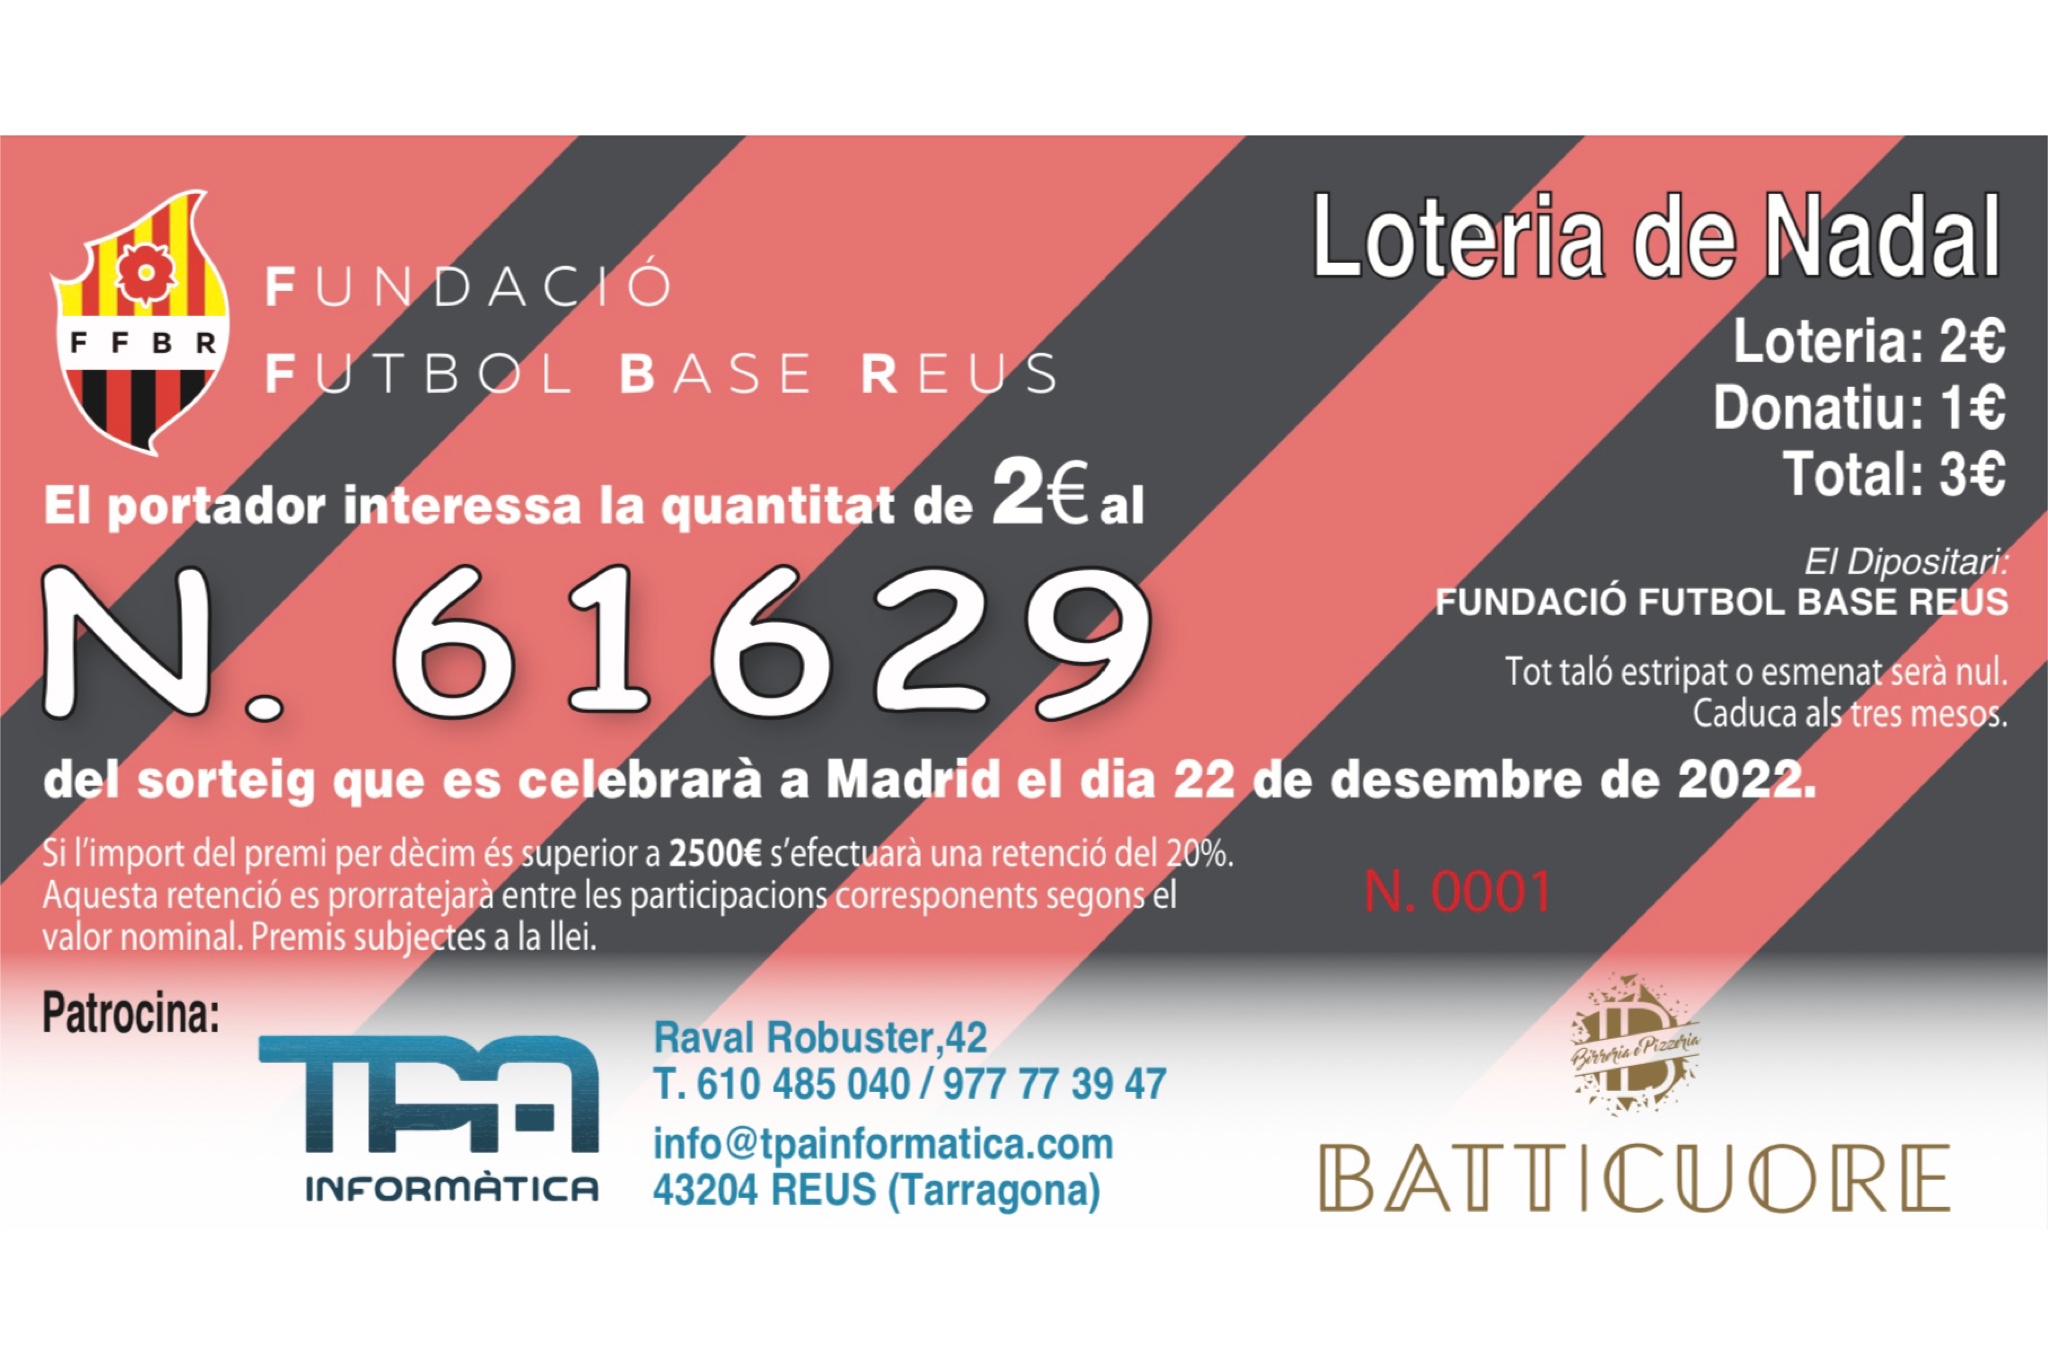 En este momento estás viendo 61629, el número de la Loteria de Nadal 2022 de la FFBR